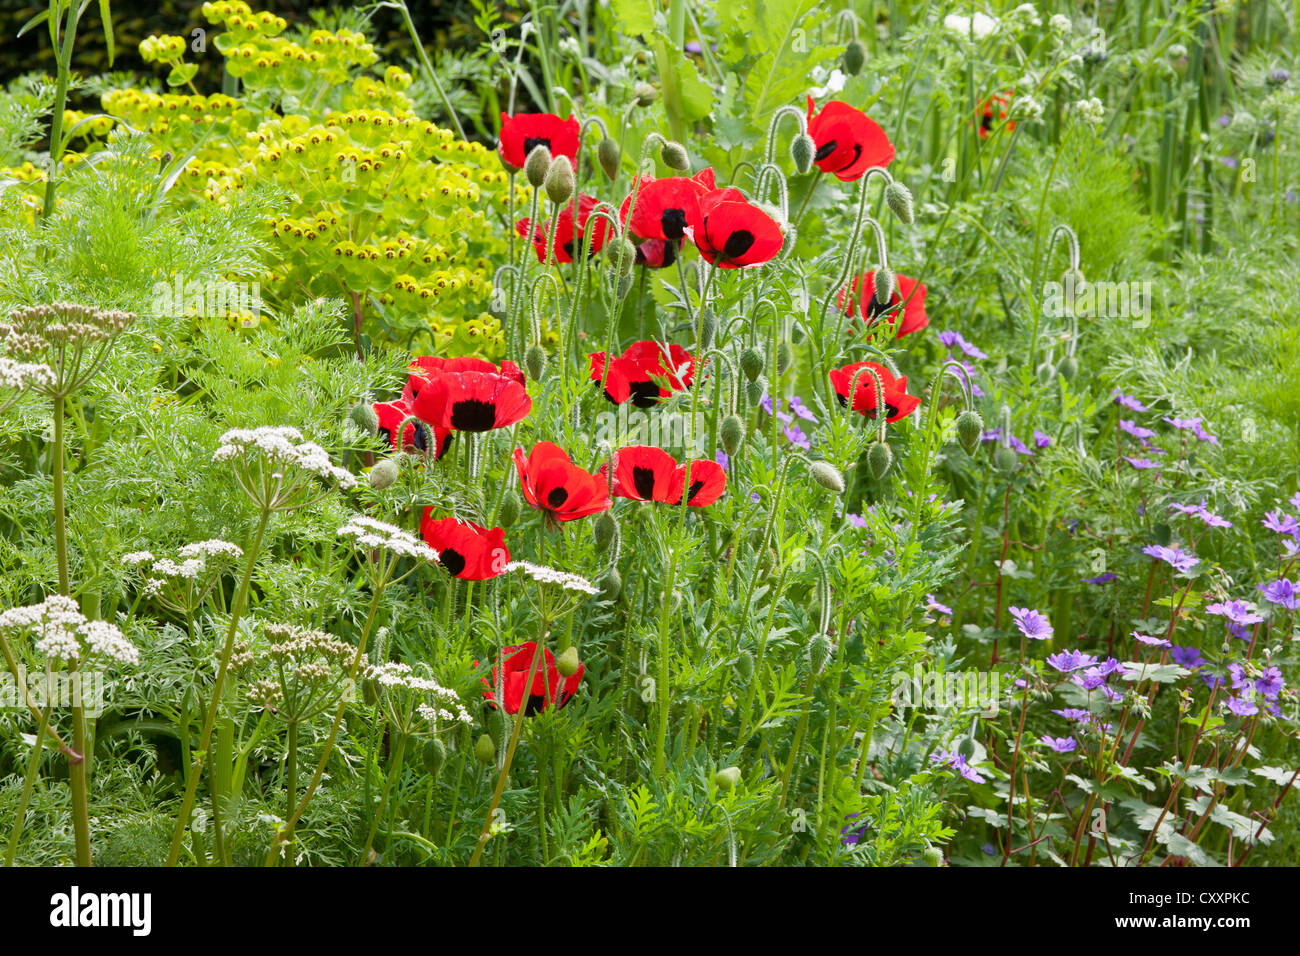 Chelsea RHS flower show gardens 2012 London UK Stock Photo